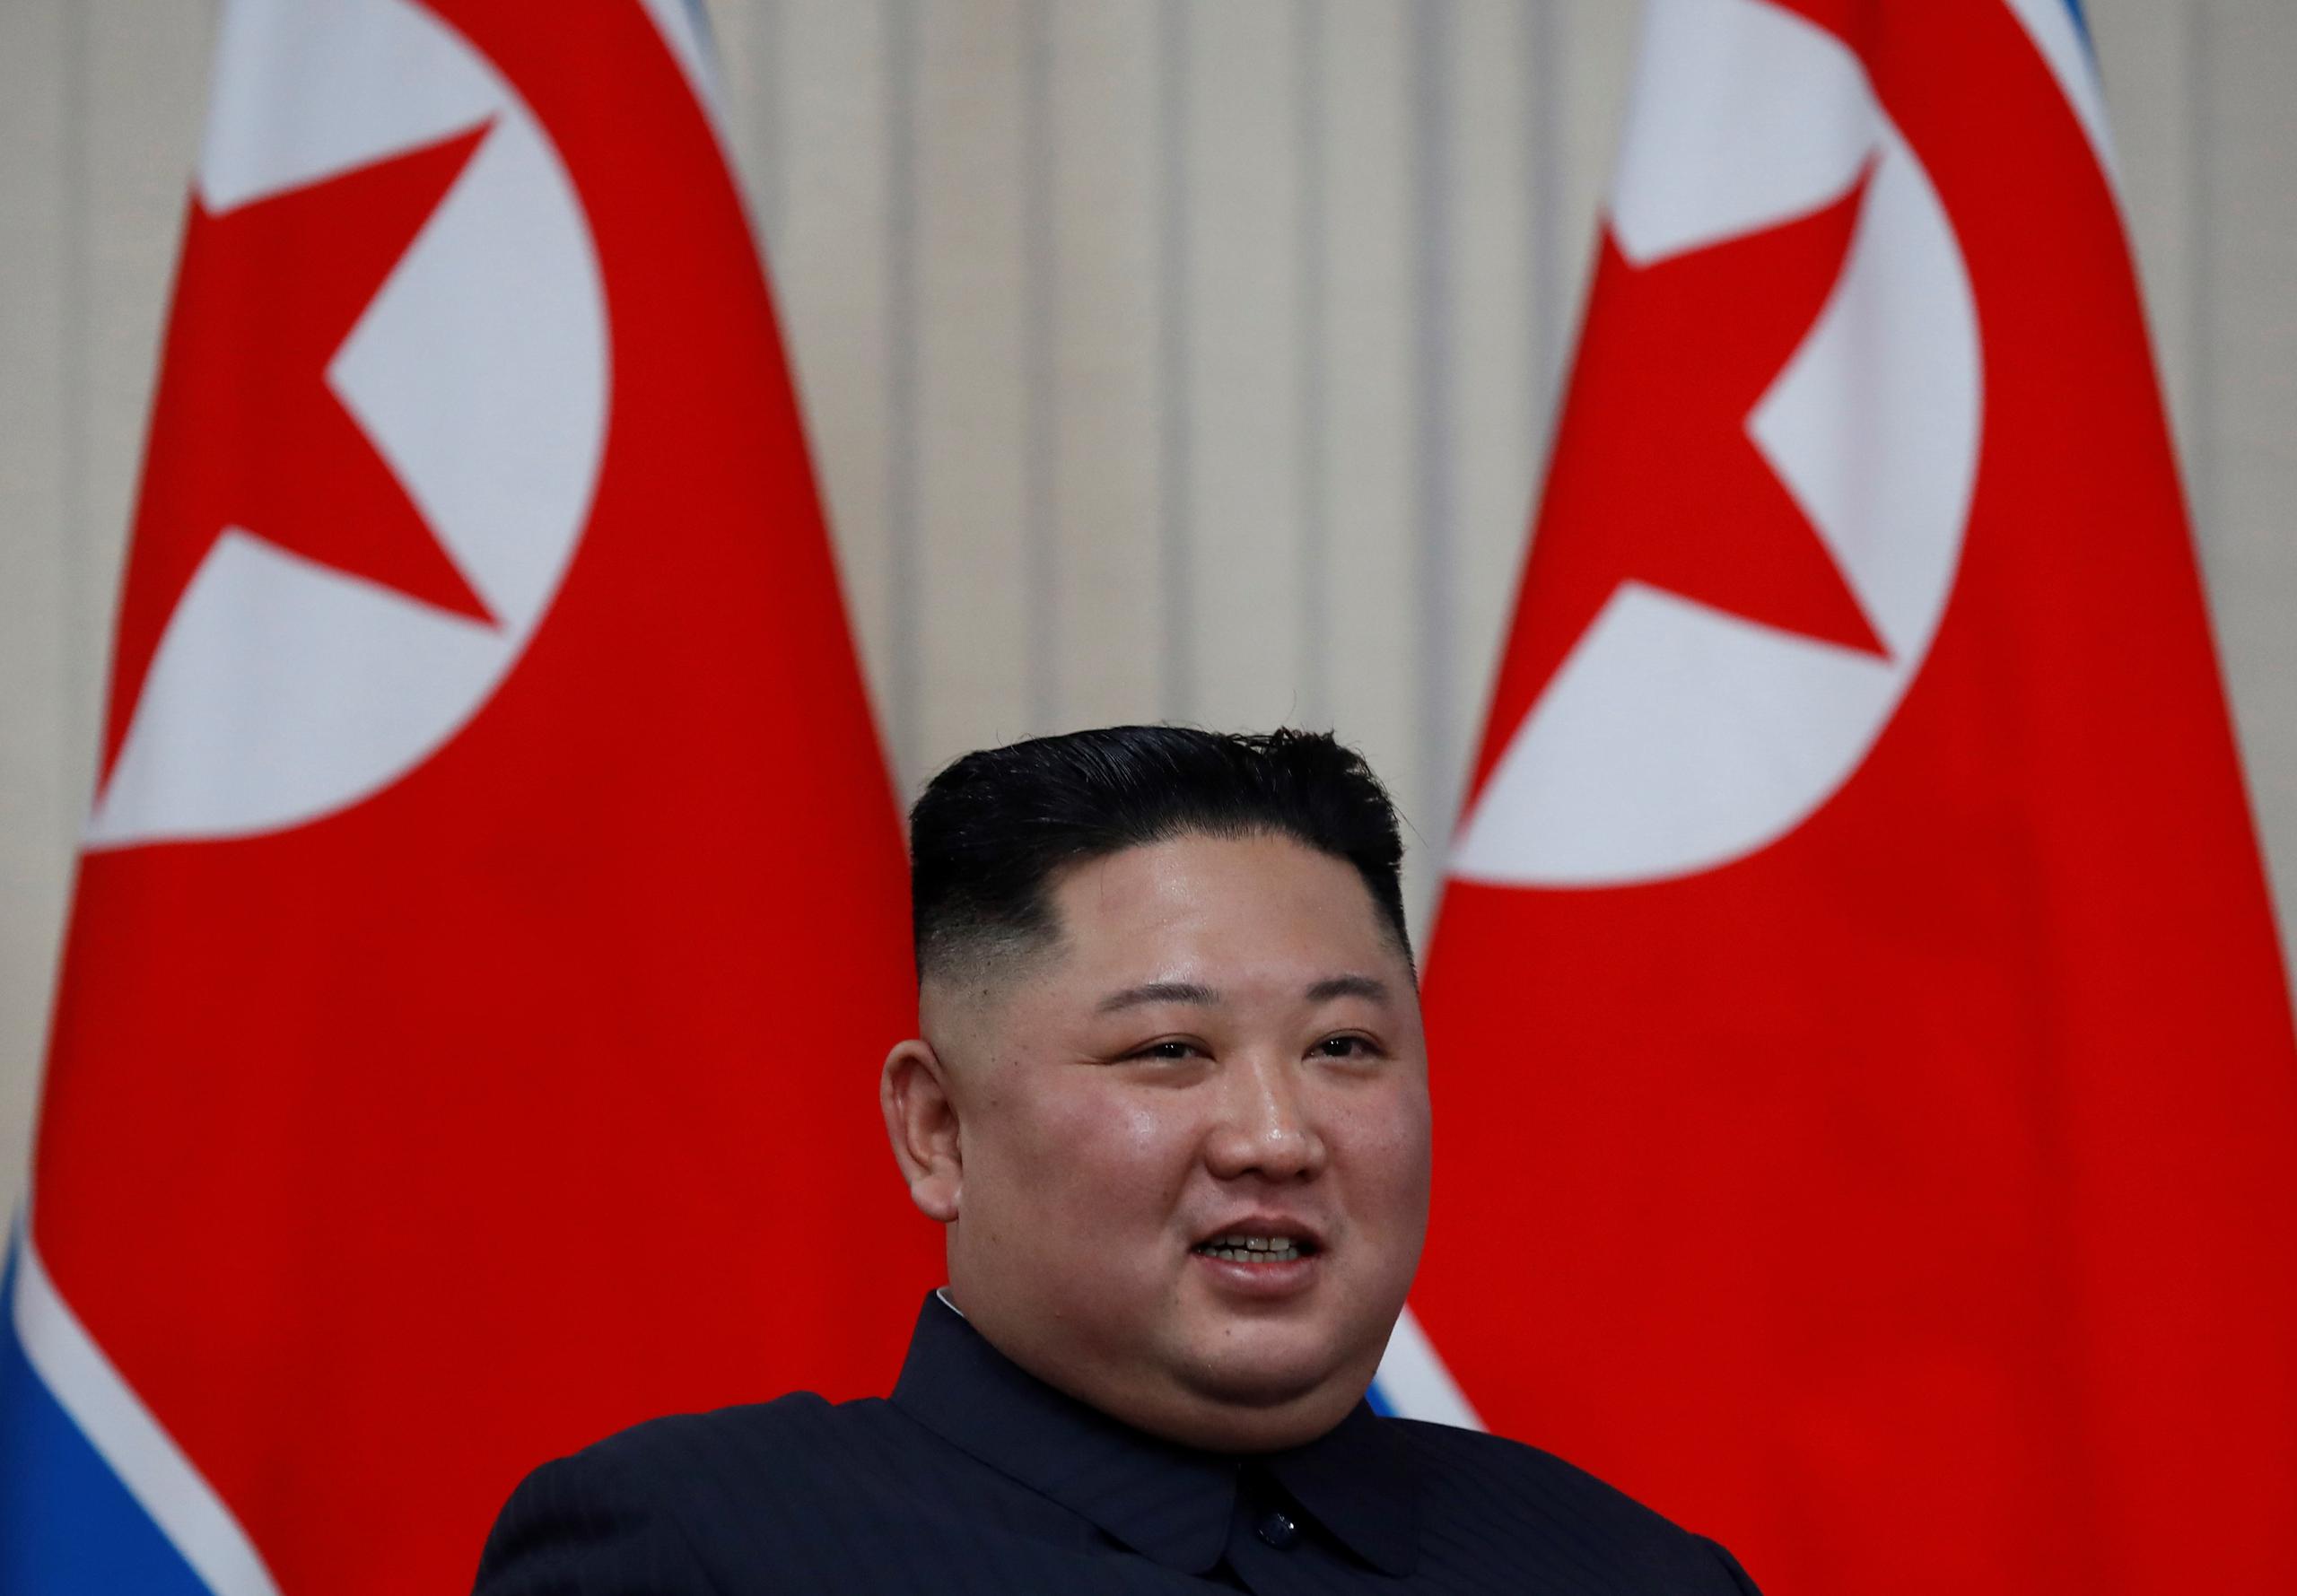 El líder de Corea del Norte, Kim Jong-un, ha pedido a las fuerzas armadas de su país desarrollar capacidades "para prevenir, contener y frustrar" todo tipo de ataques, incluidos los nucleares, por parte de fuerzas hostiles, según recogen hoy los medios estatales.